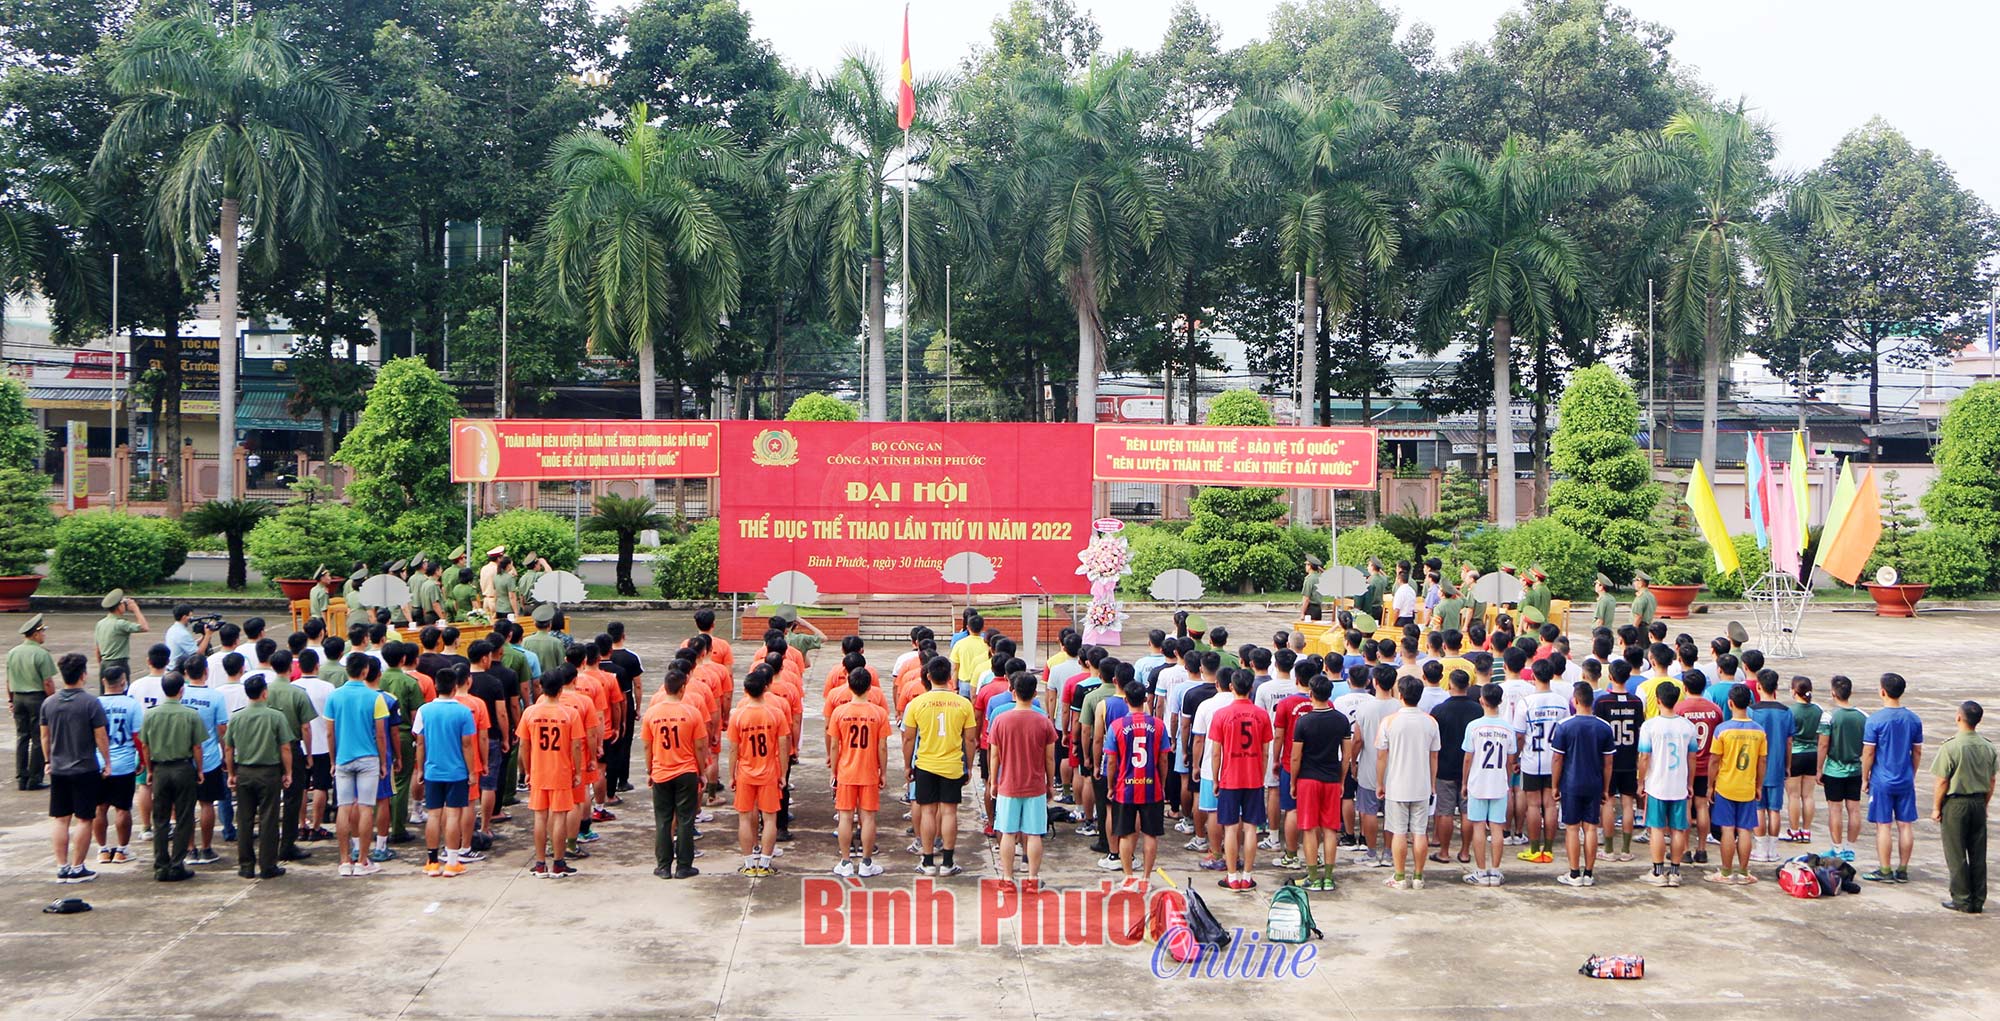 Khai mạc Đại hội thể dục thể thao Công an tỉnh Bình Phước lần thứ VI